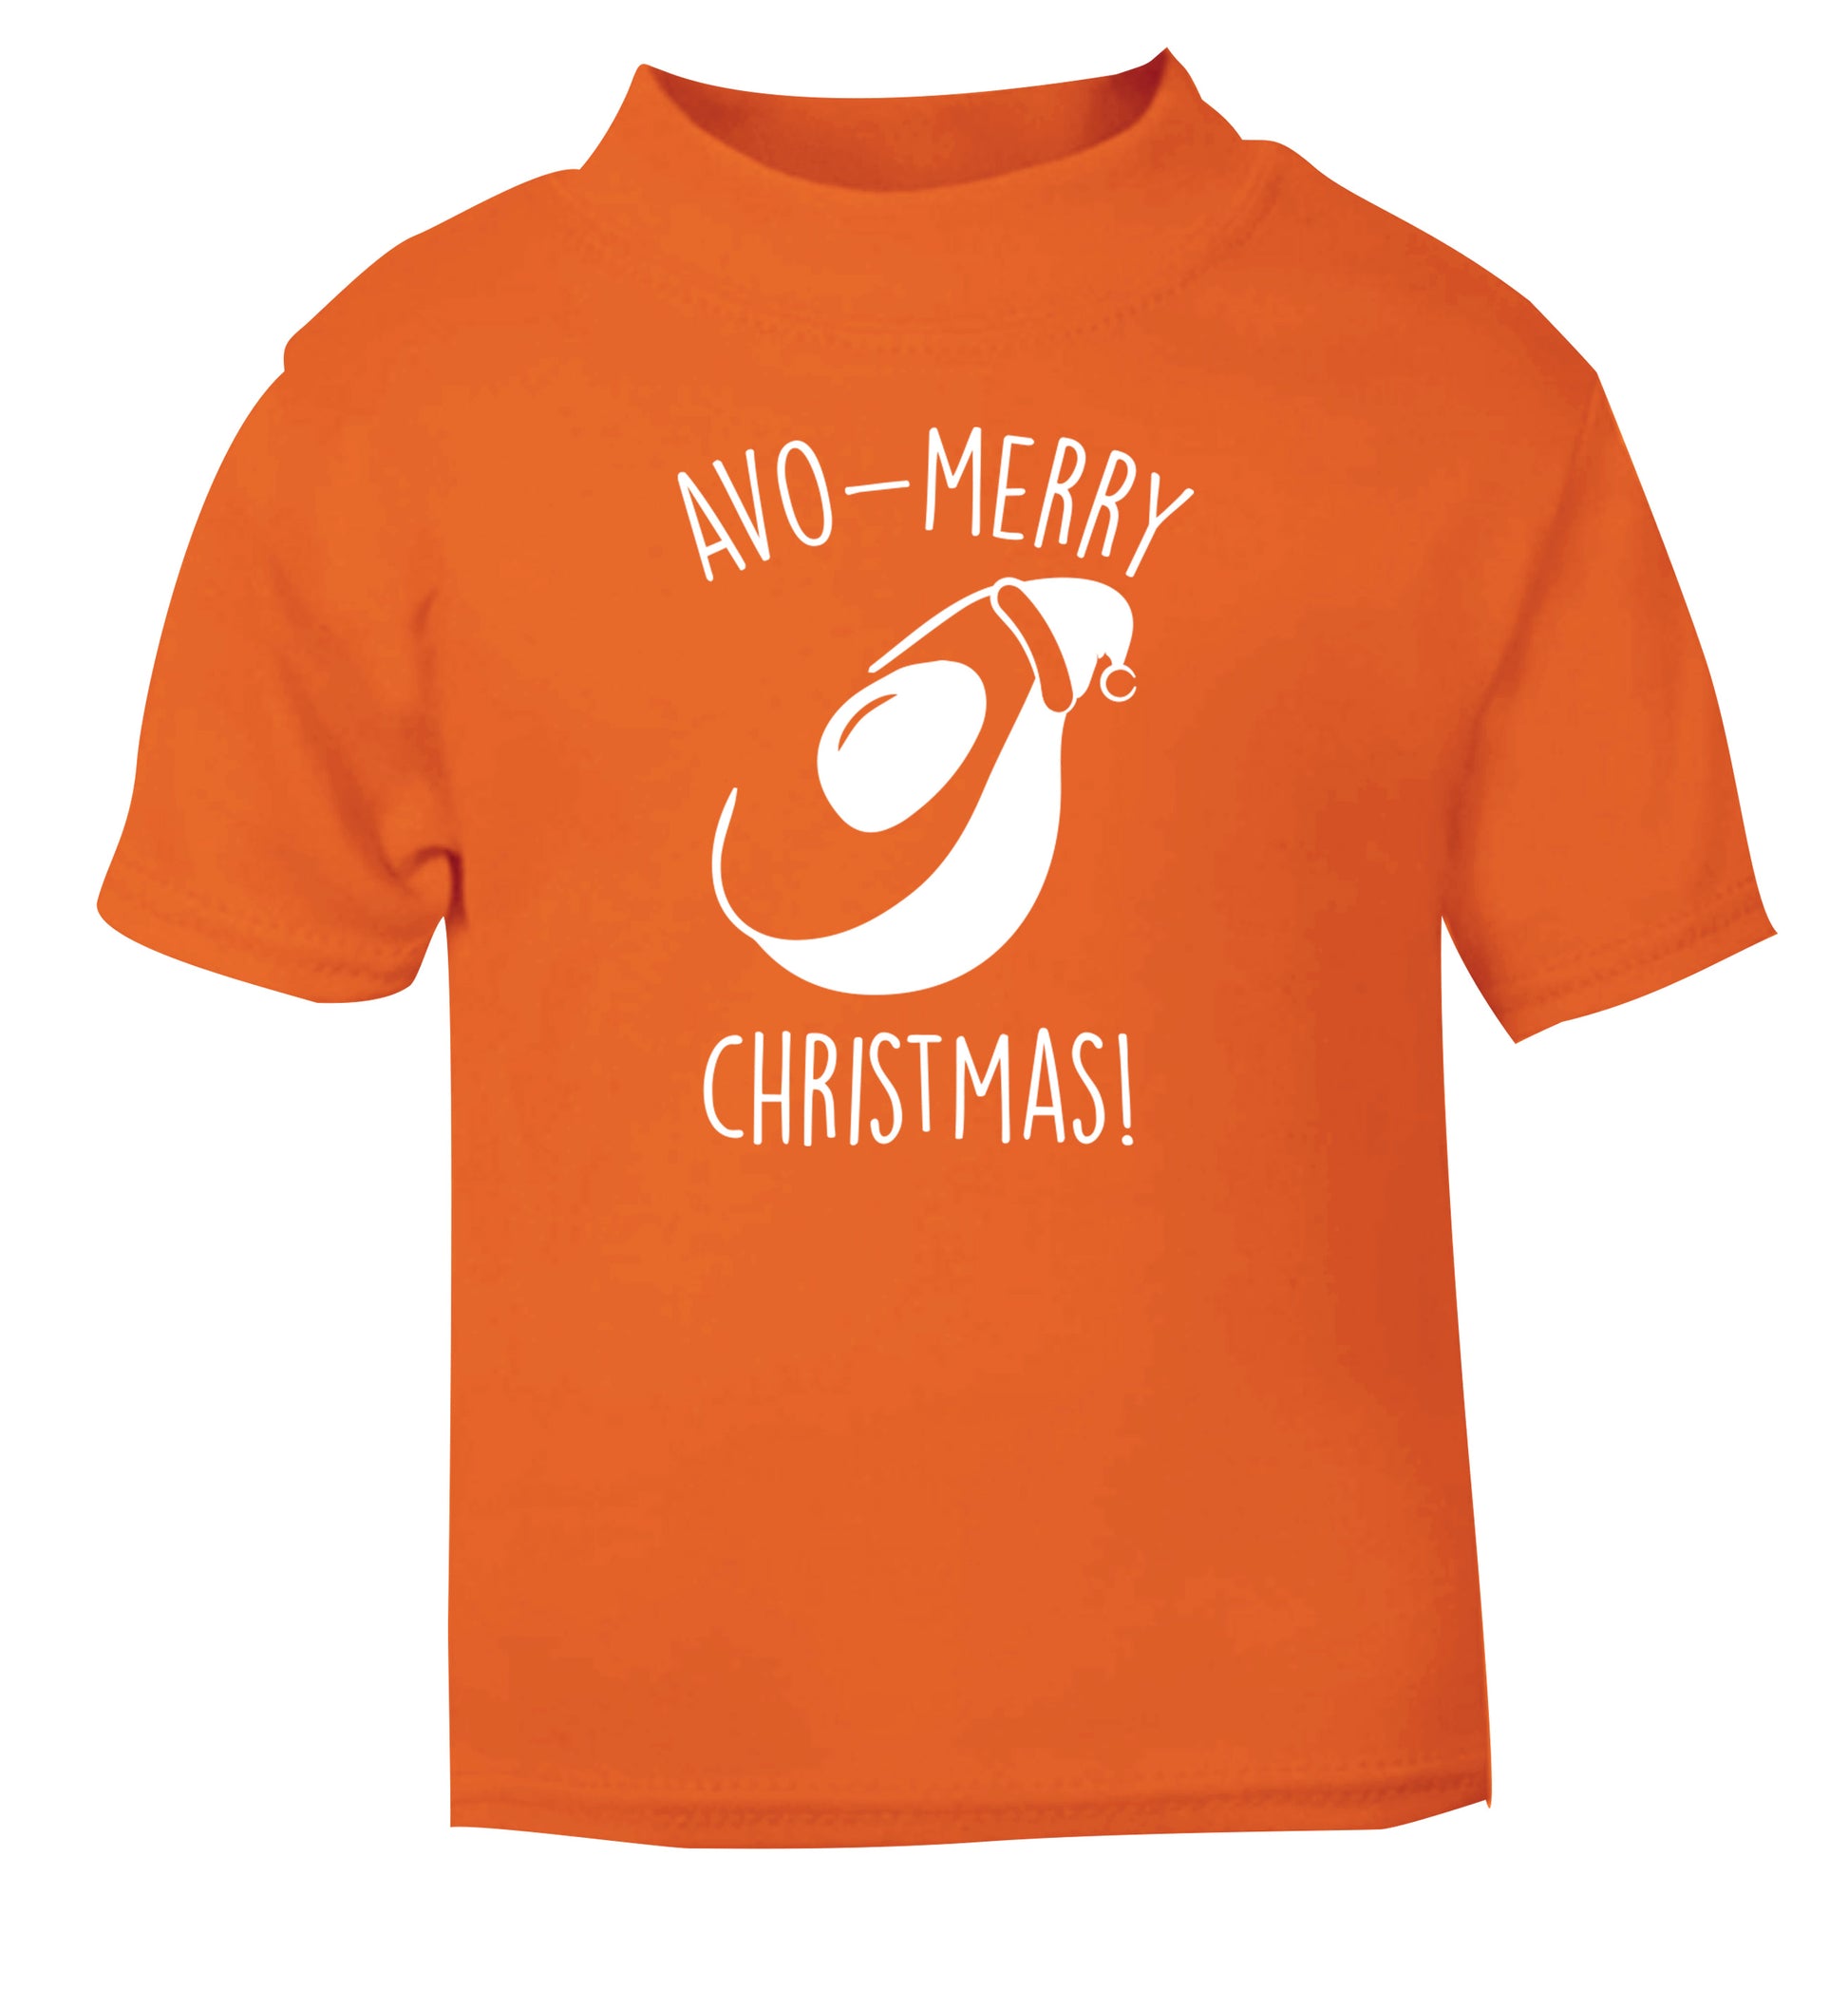 Avo-Merry Christmas orange Baby Toddler Tshirt 2 Years